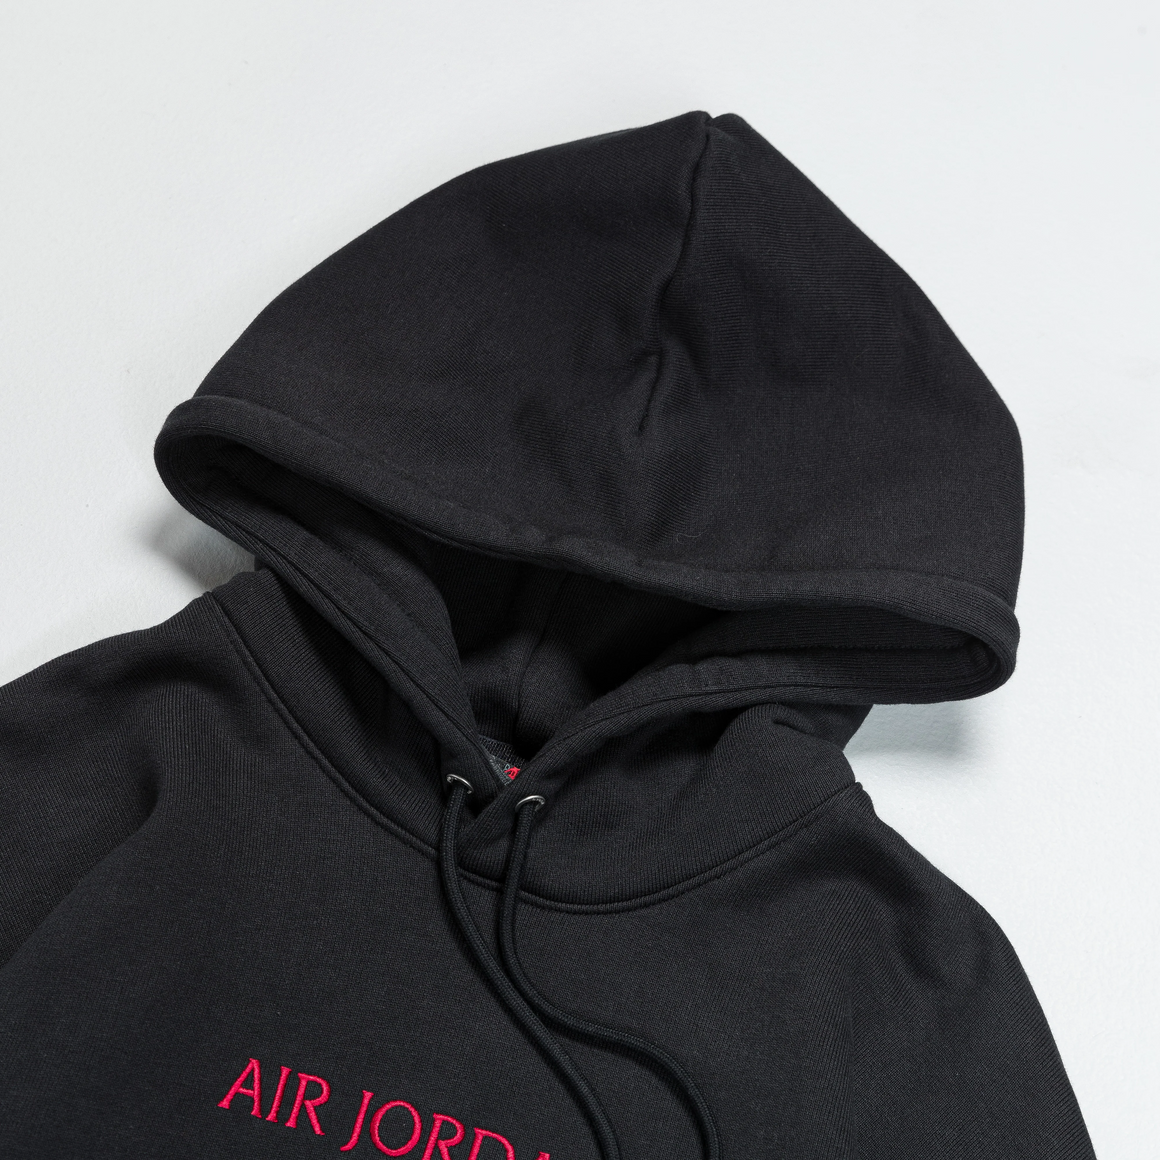 Jordan - Air Jordan SP Fleece Hoodie - Black/Gym Red - UP THERE